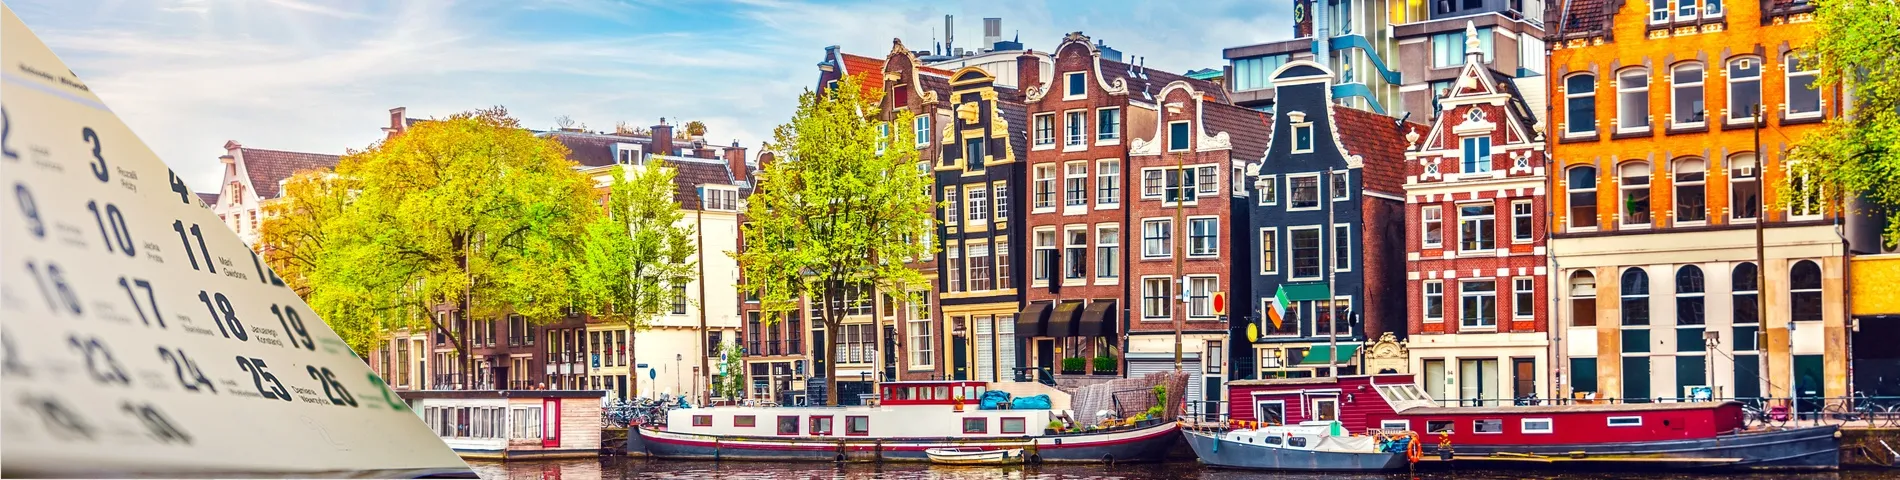 أمستردام - (الدورة طويلة المدة (+12 أسبوع